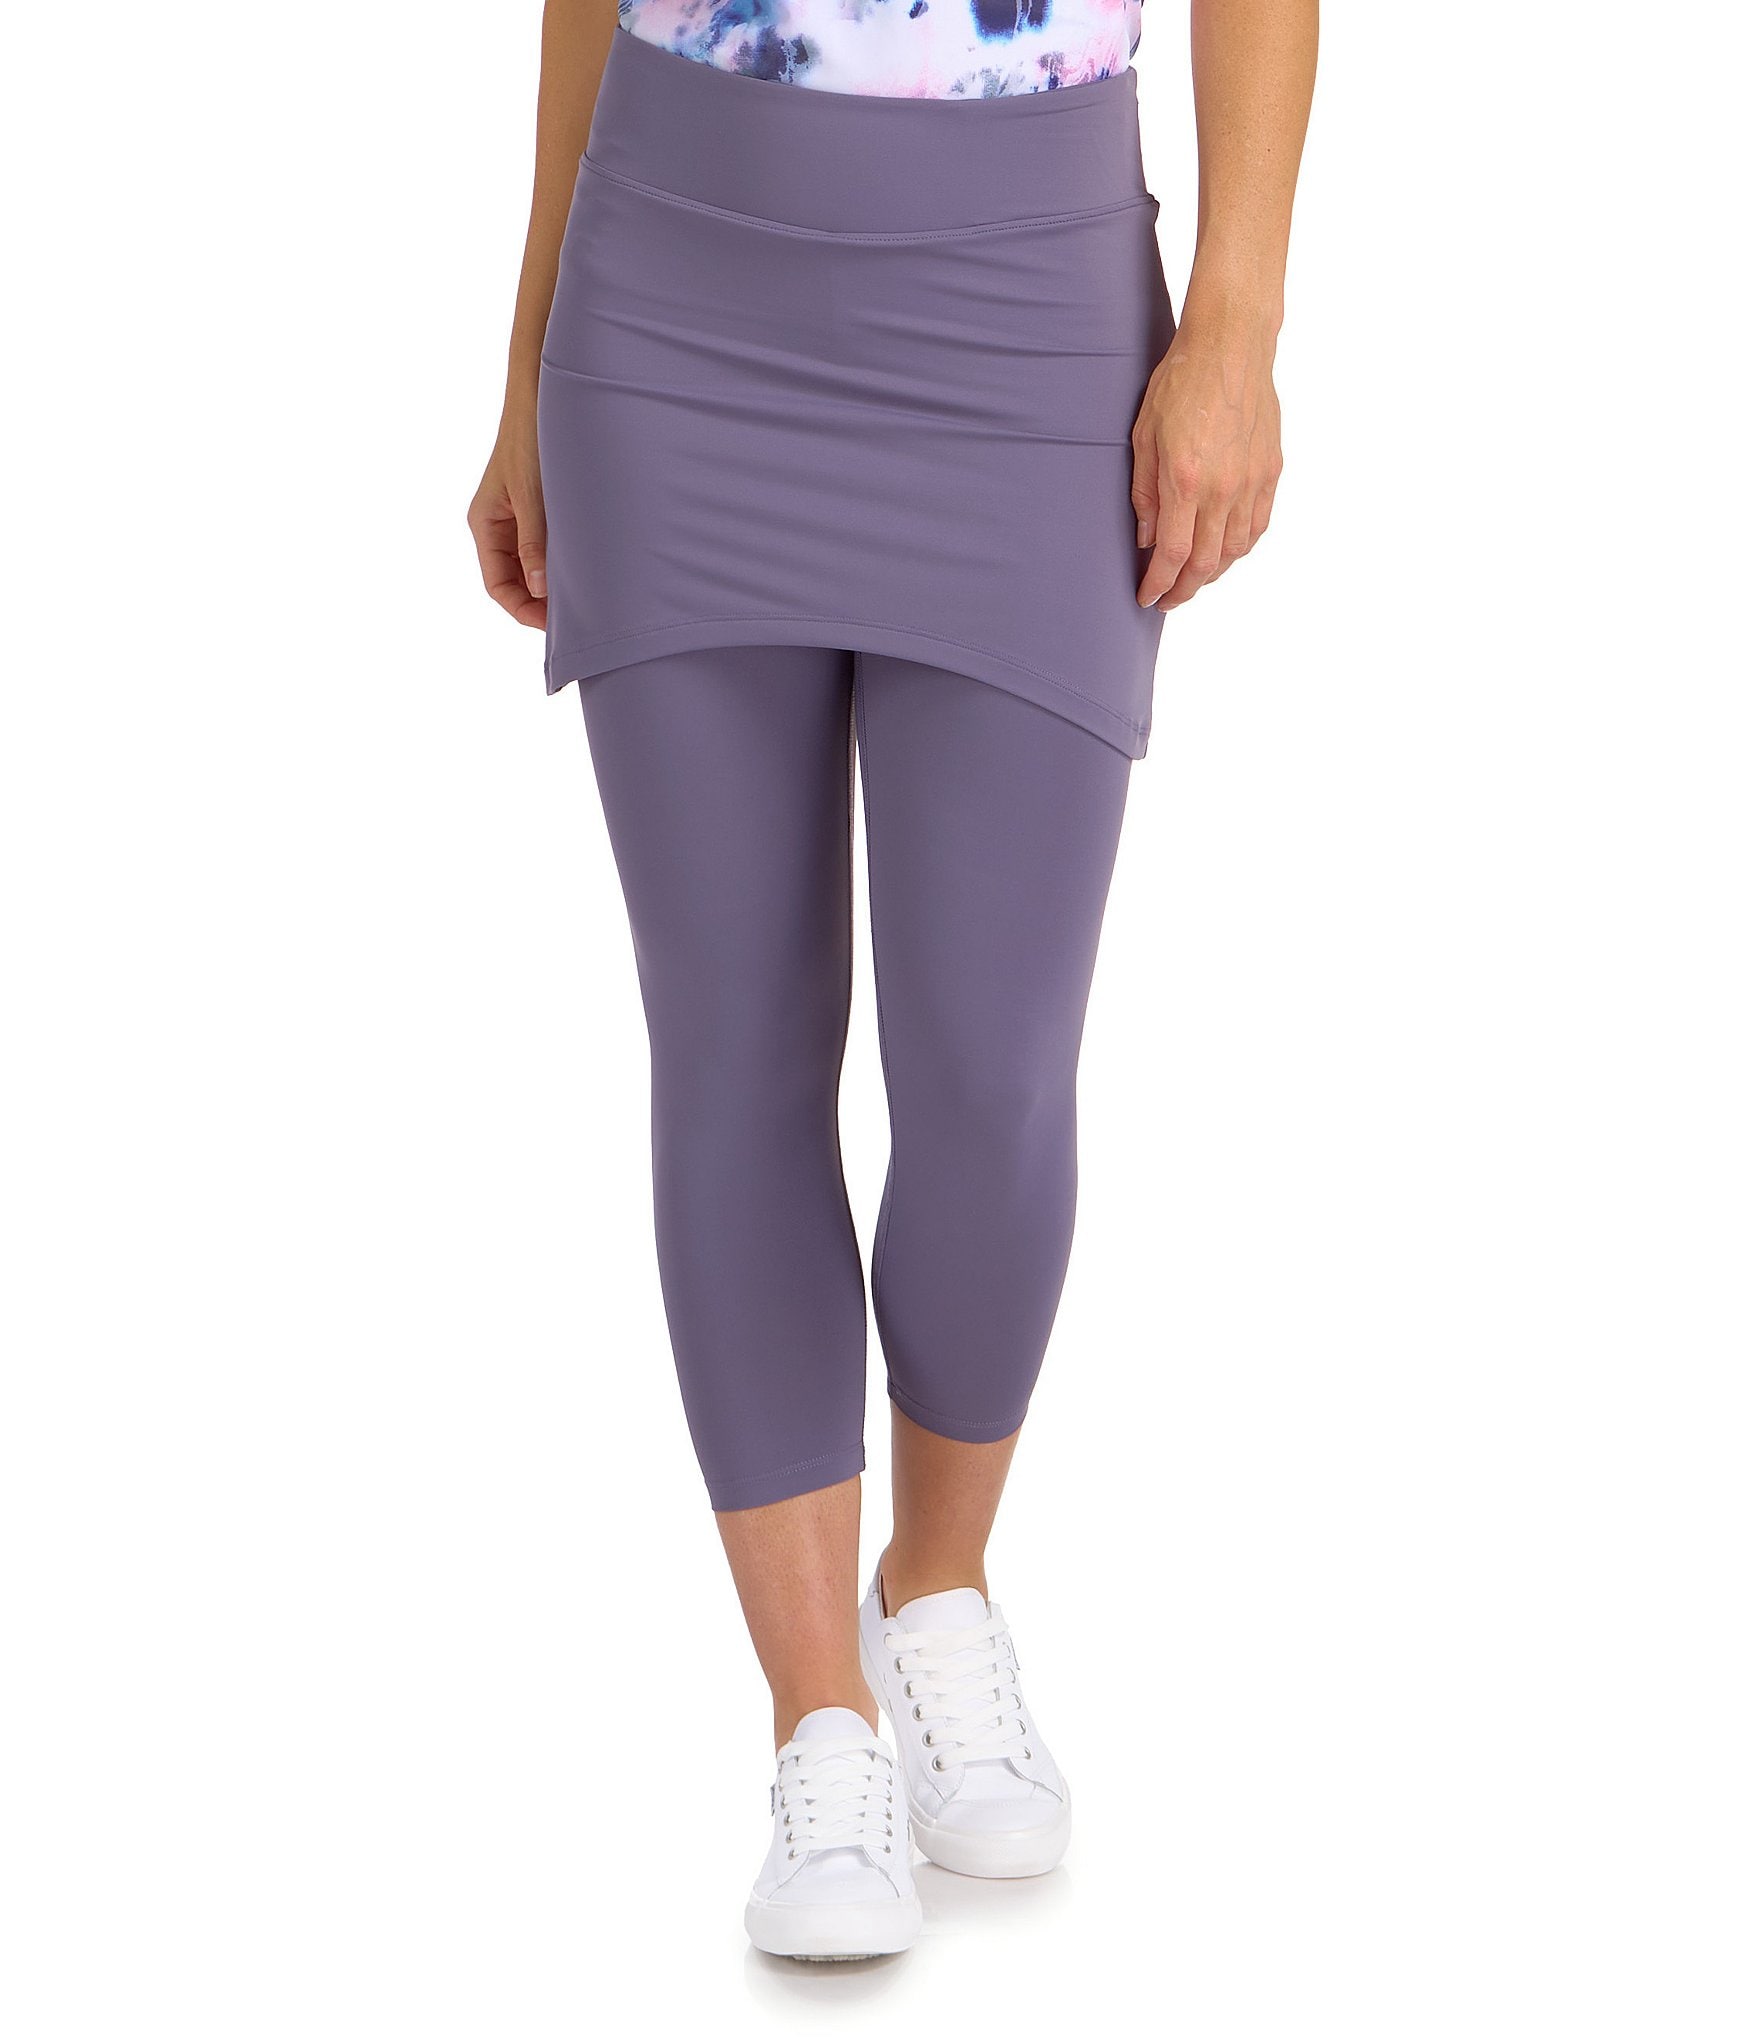 Buy Women's Purple Leggings Online